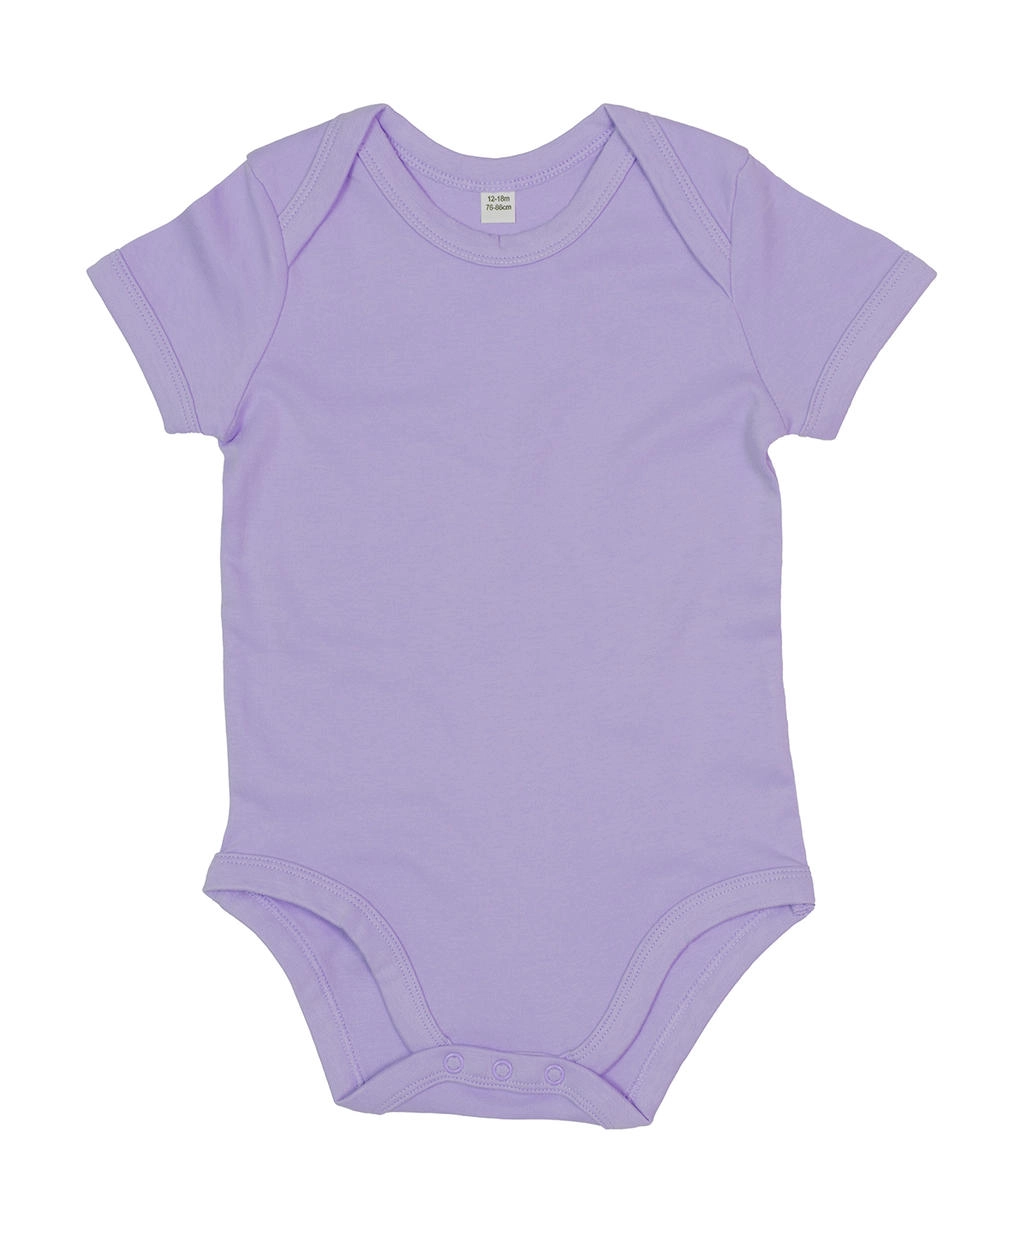 Baby Bodysuit zum Besticken und Bedrucken in der Farbe Lavender Organic mit Ihren Logo, Schriftzug oder Motiv.